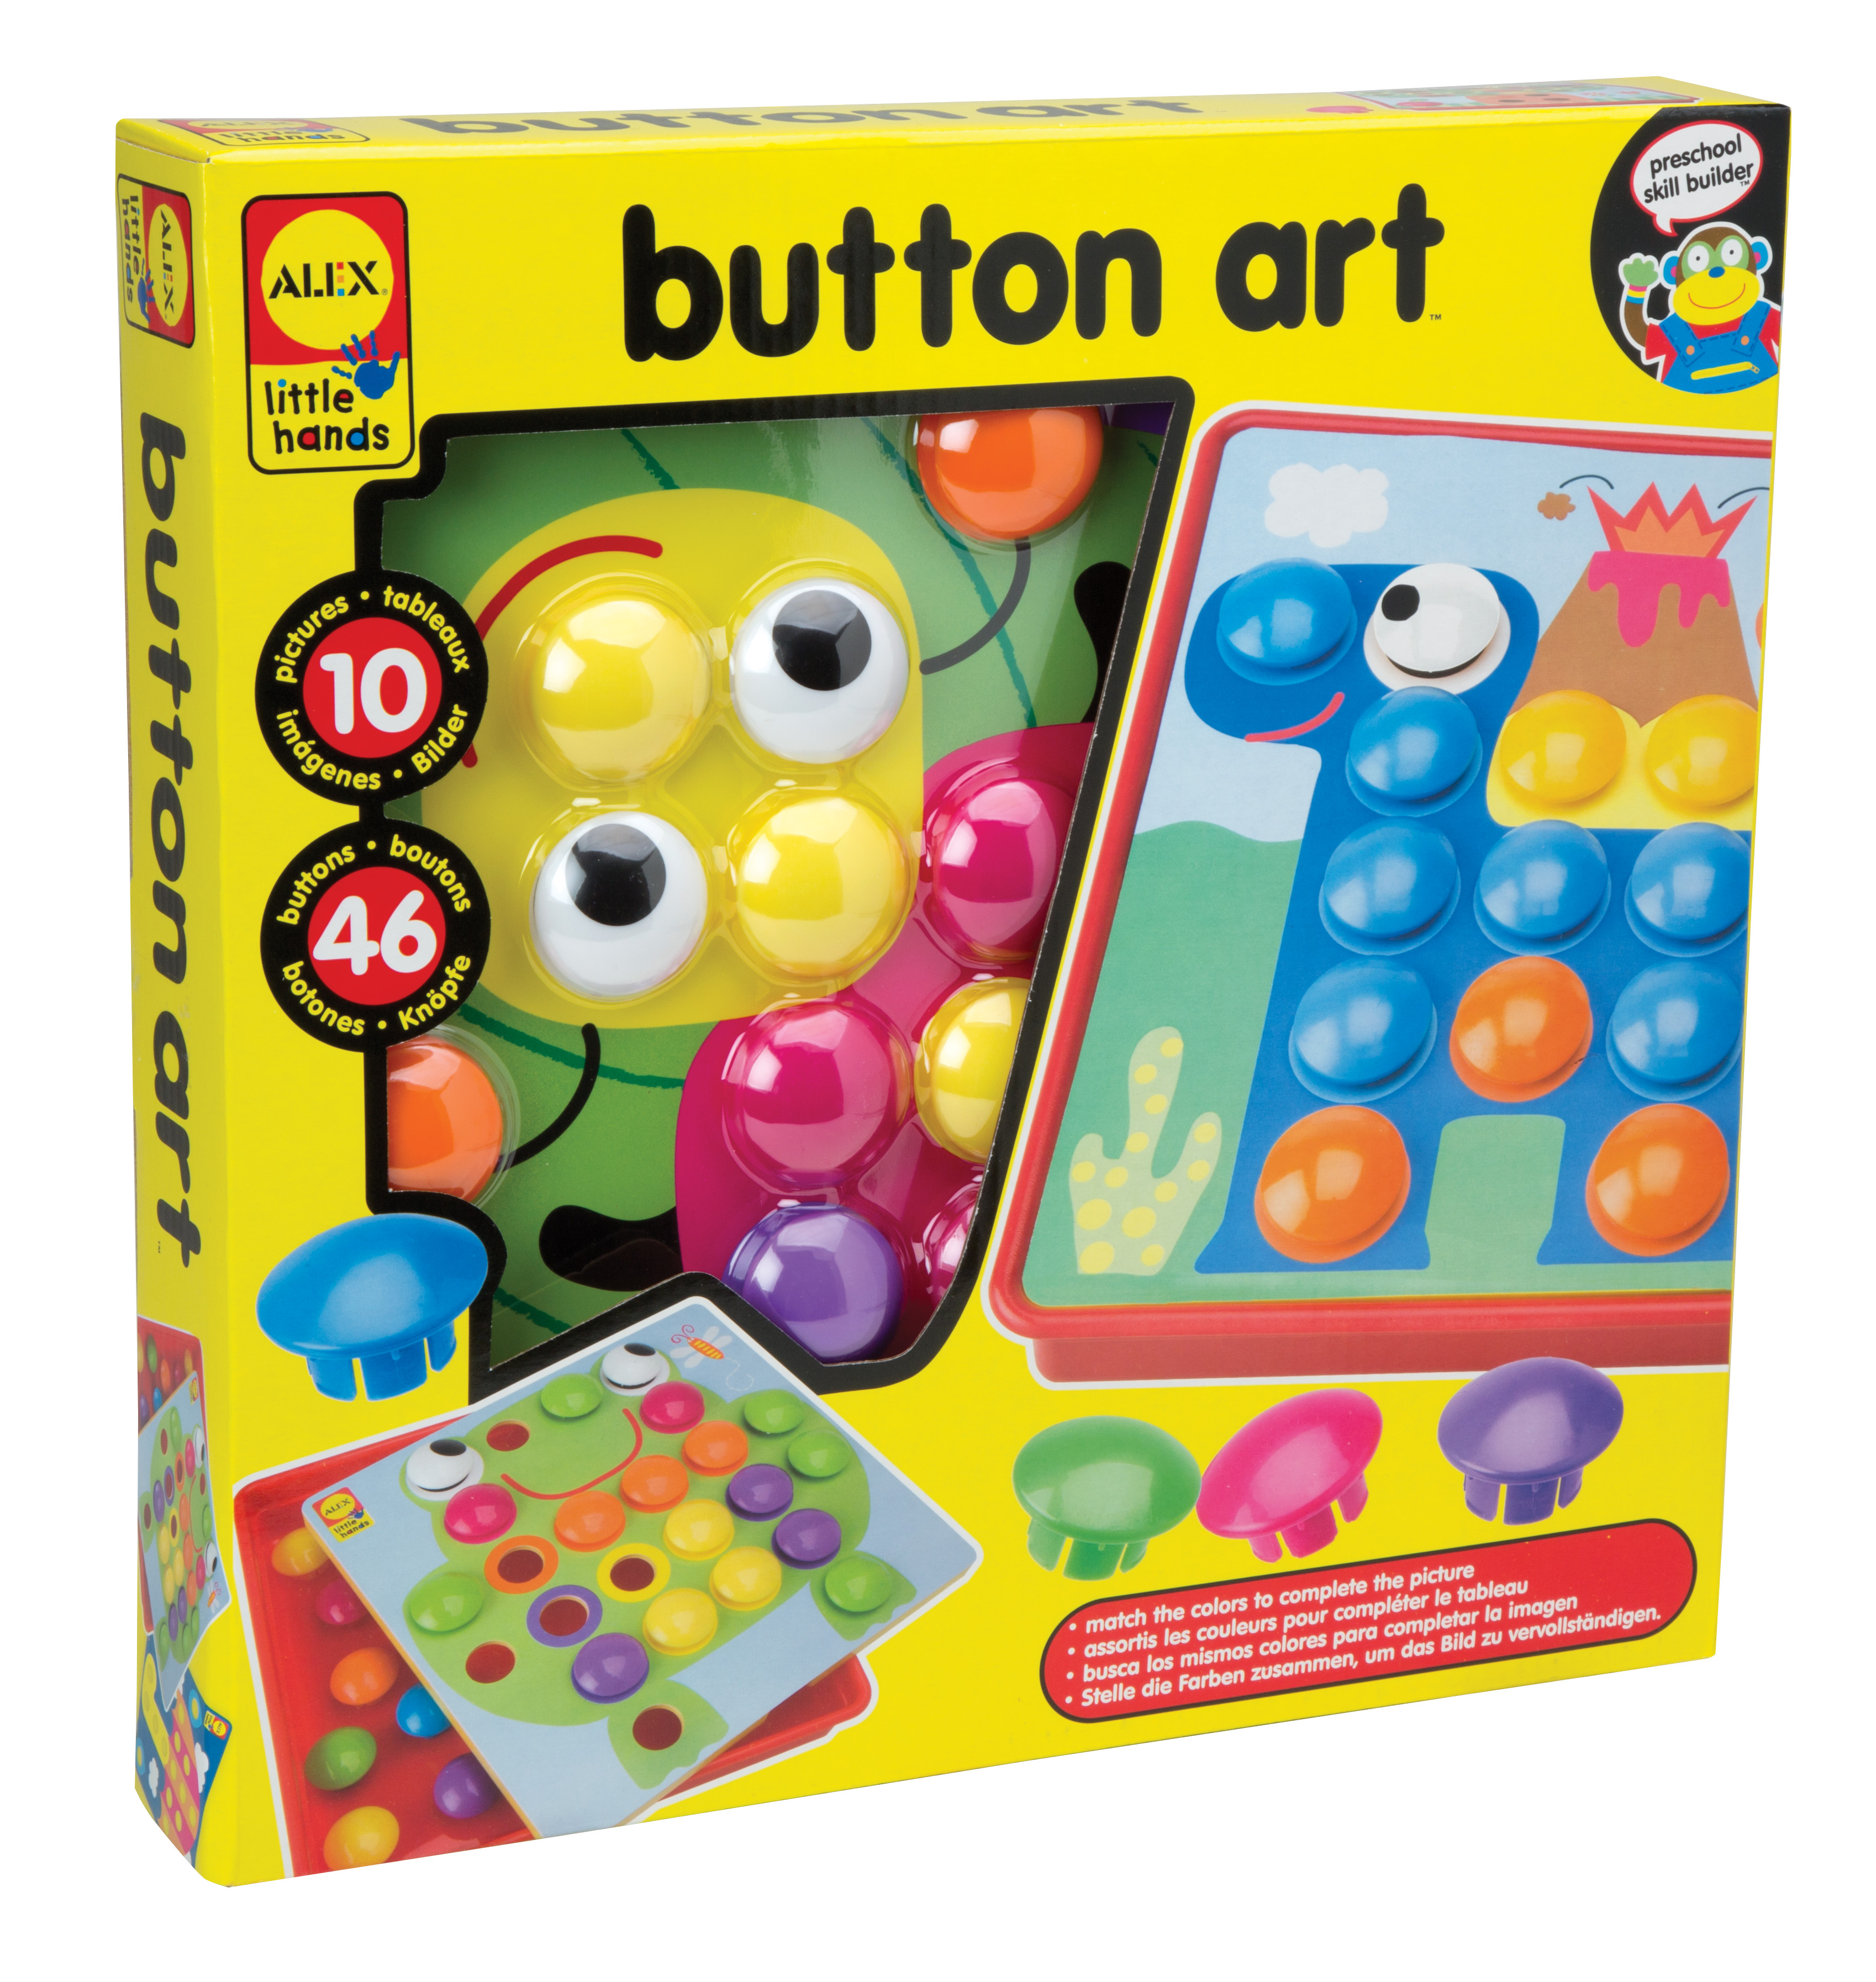 ALEX Toys Little Hands Button Art - image 1 of 3